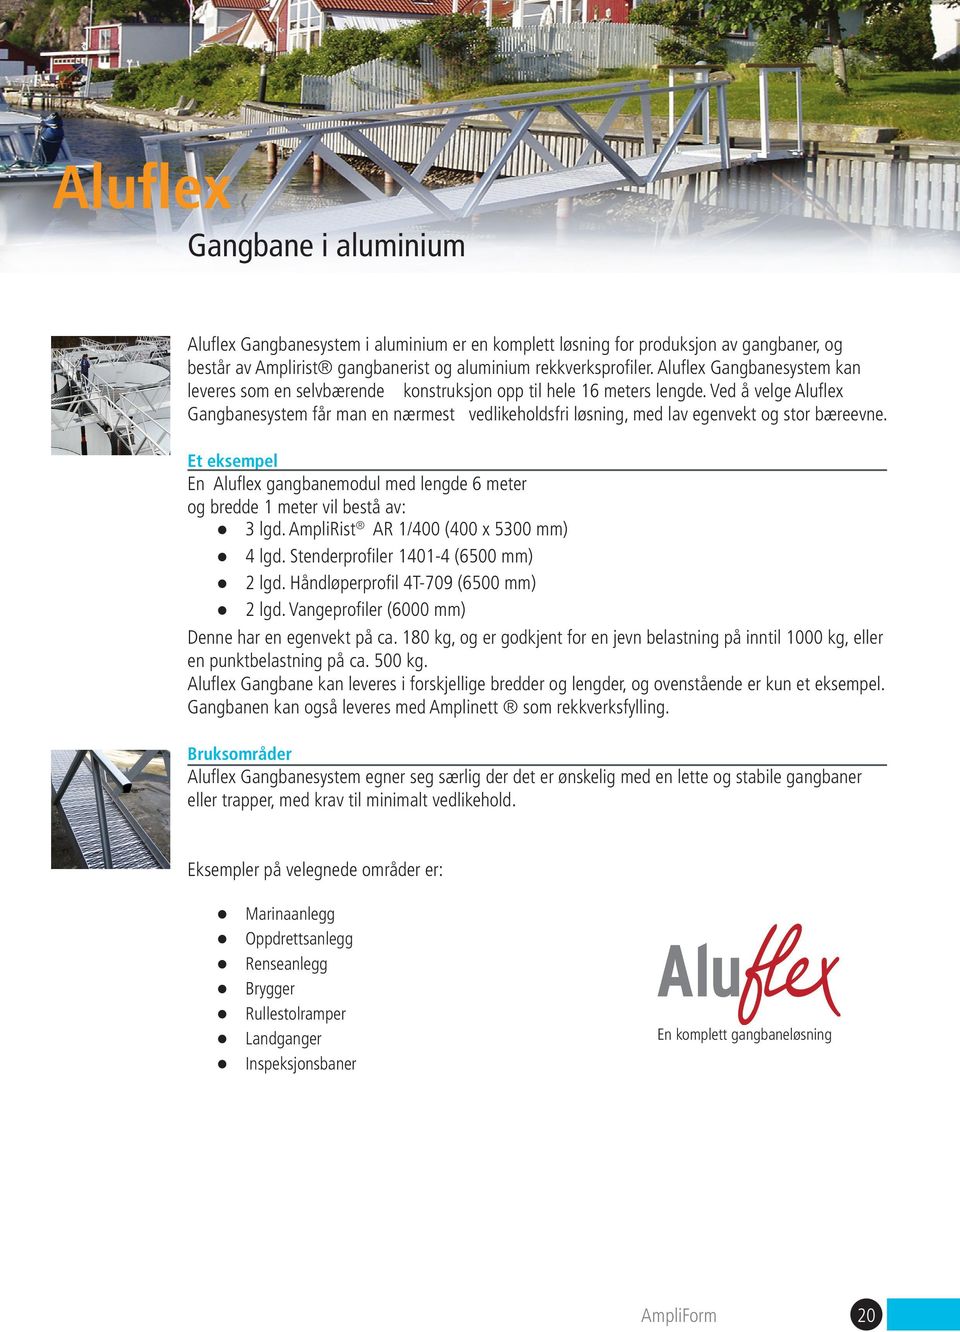 Ved å velge Aluflex Gangbanesystem får man en nærmest vedlikeholdsfri løsning, med lav egenvekt og stor bæreevne.